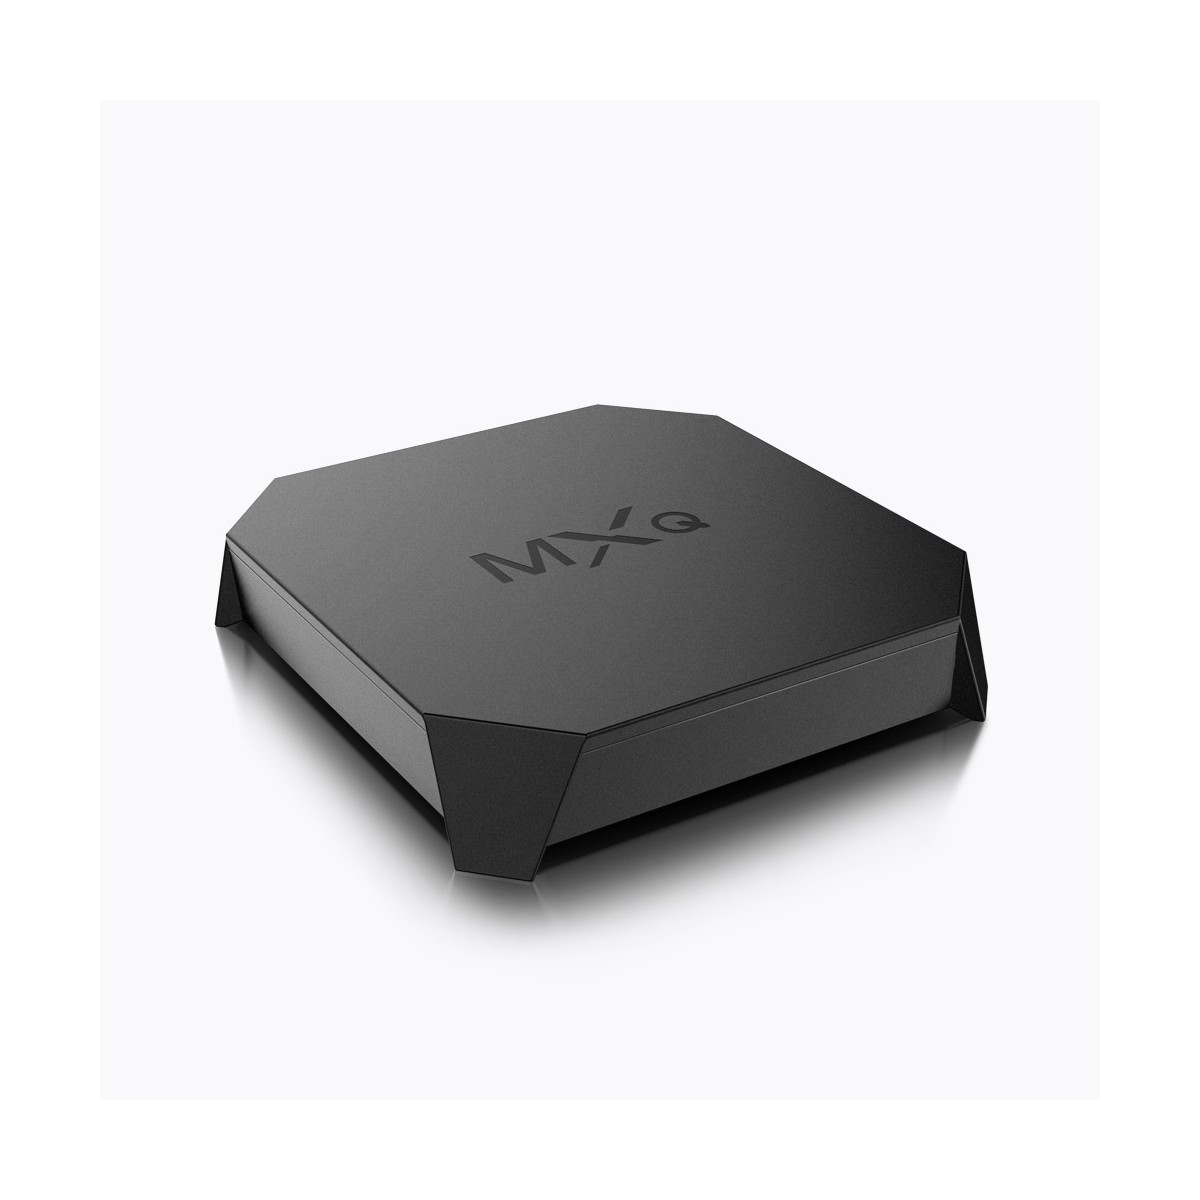 Décodeur multimédias Smart TV Box Android 7.1 MXQ 2G-16G